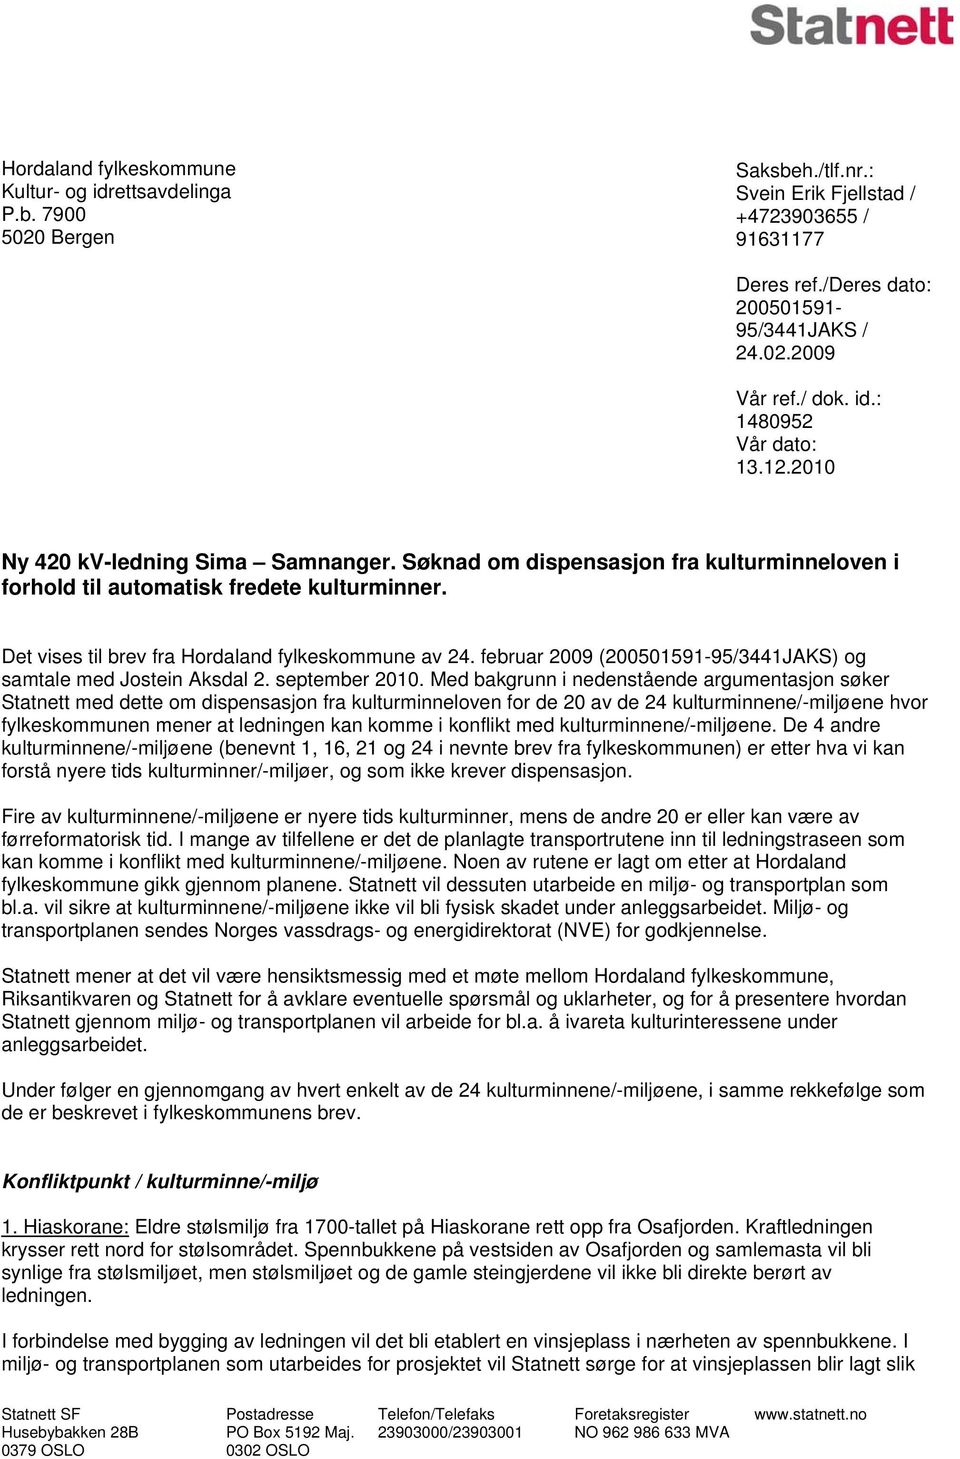 Det vises til brev fra Hordaland fylkeskommune av 24. februar 2009 (200501591-95/3441JAKS) og samtale med Jostein Aksdal 2. september 2010.